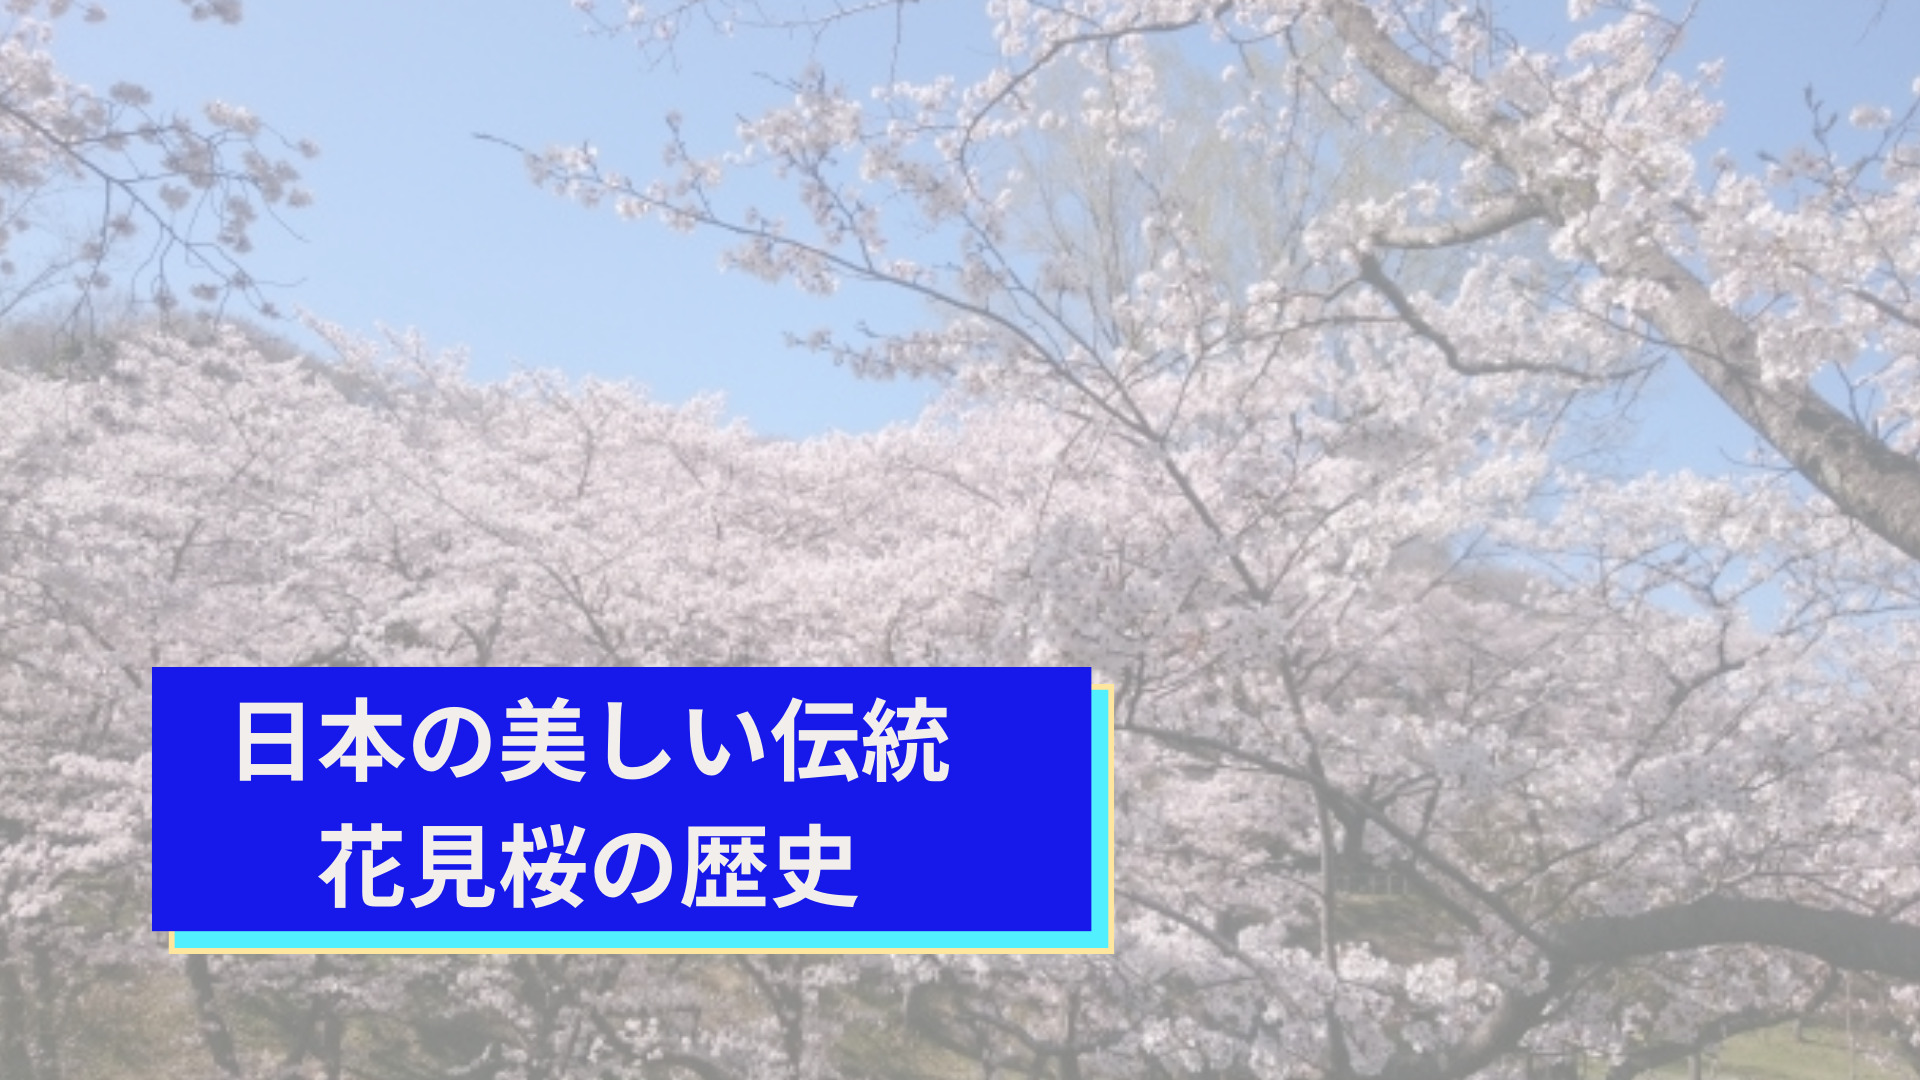 日本の美しい伝統、花見桜の歴史